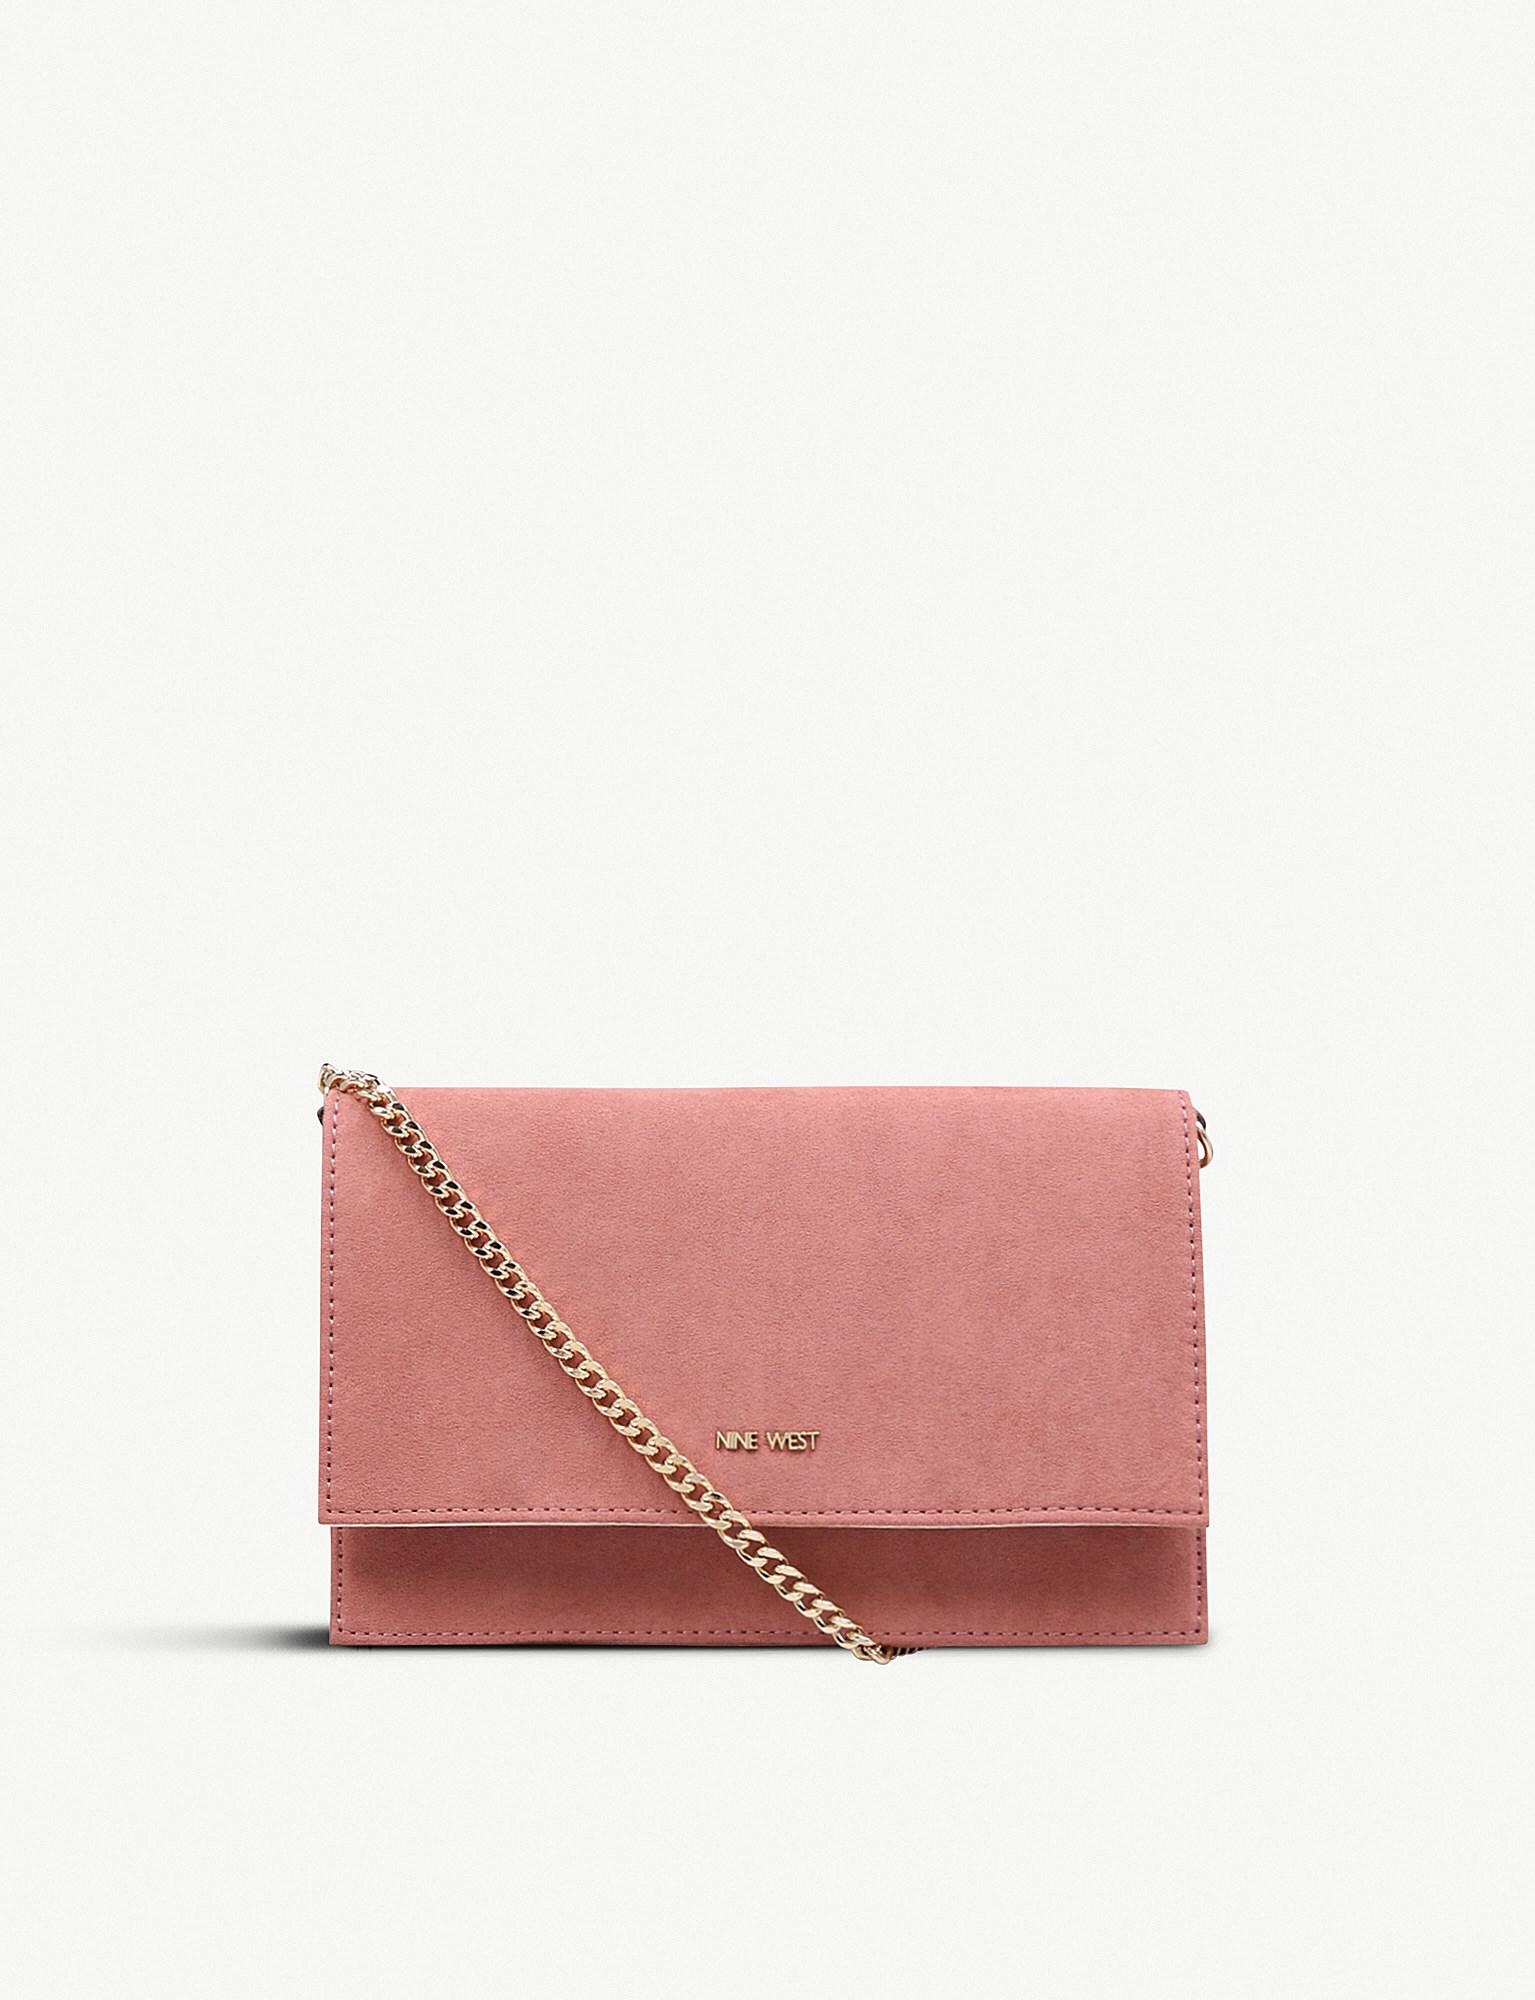 pink suede clutch bag